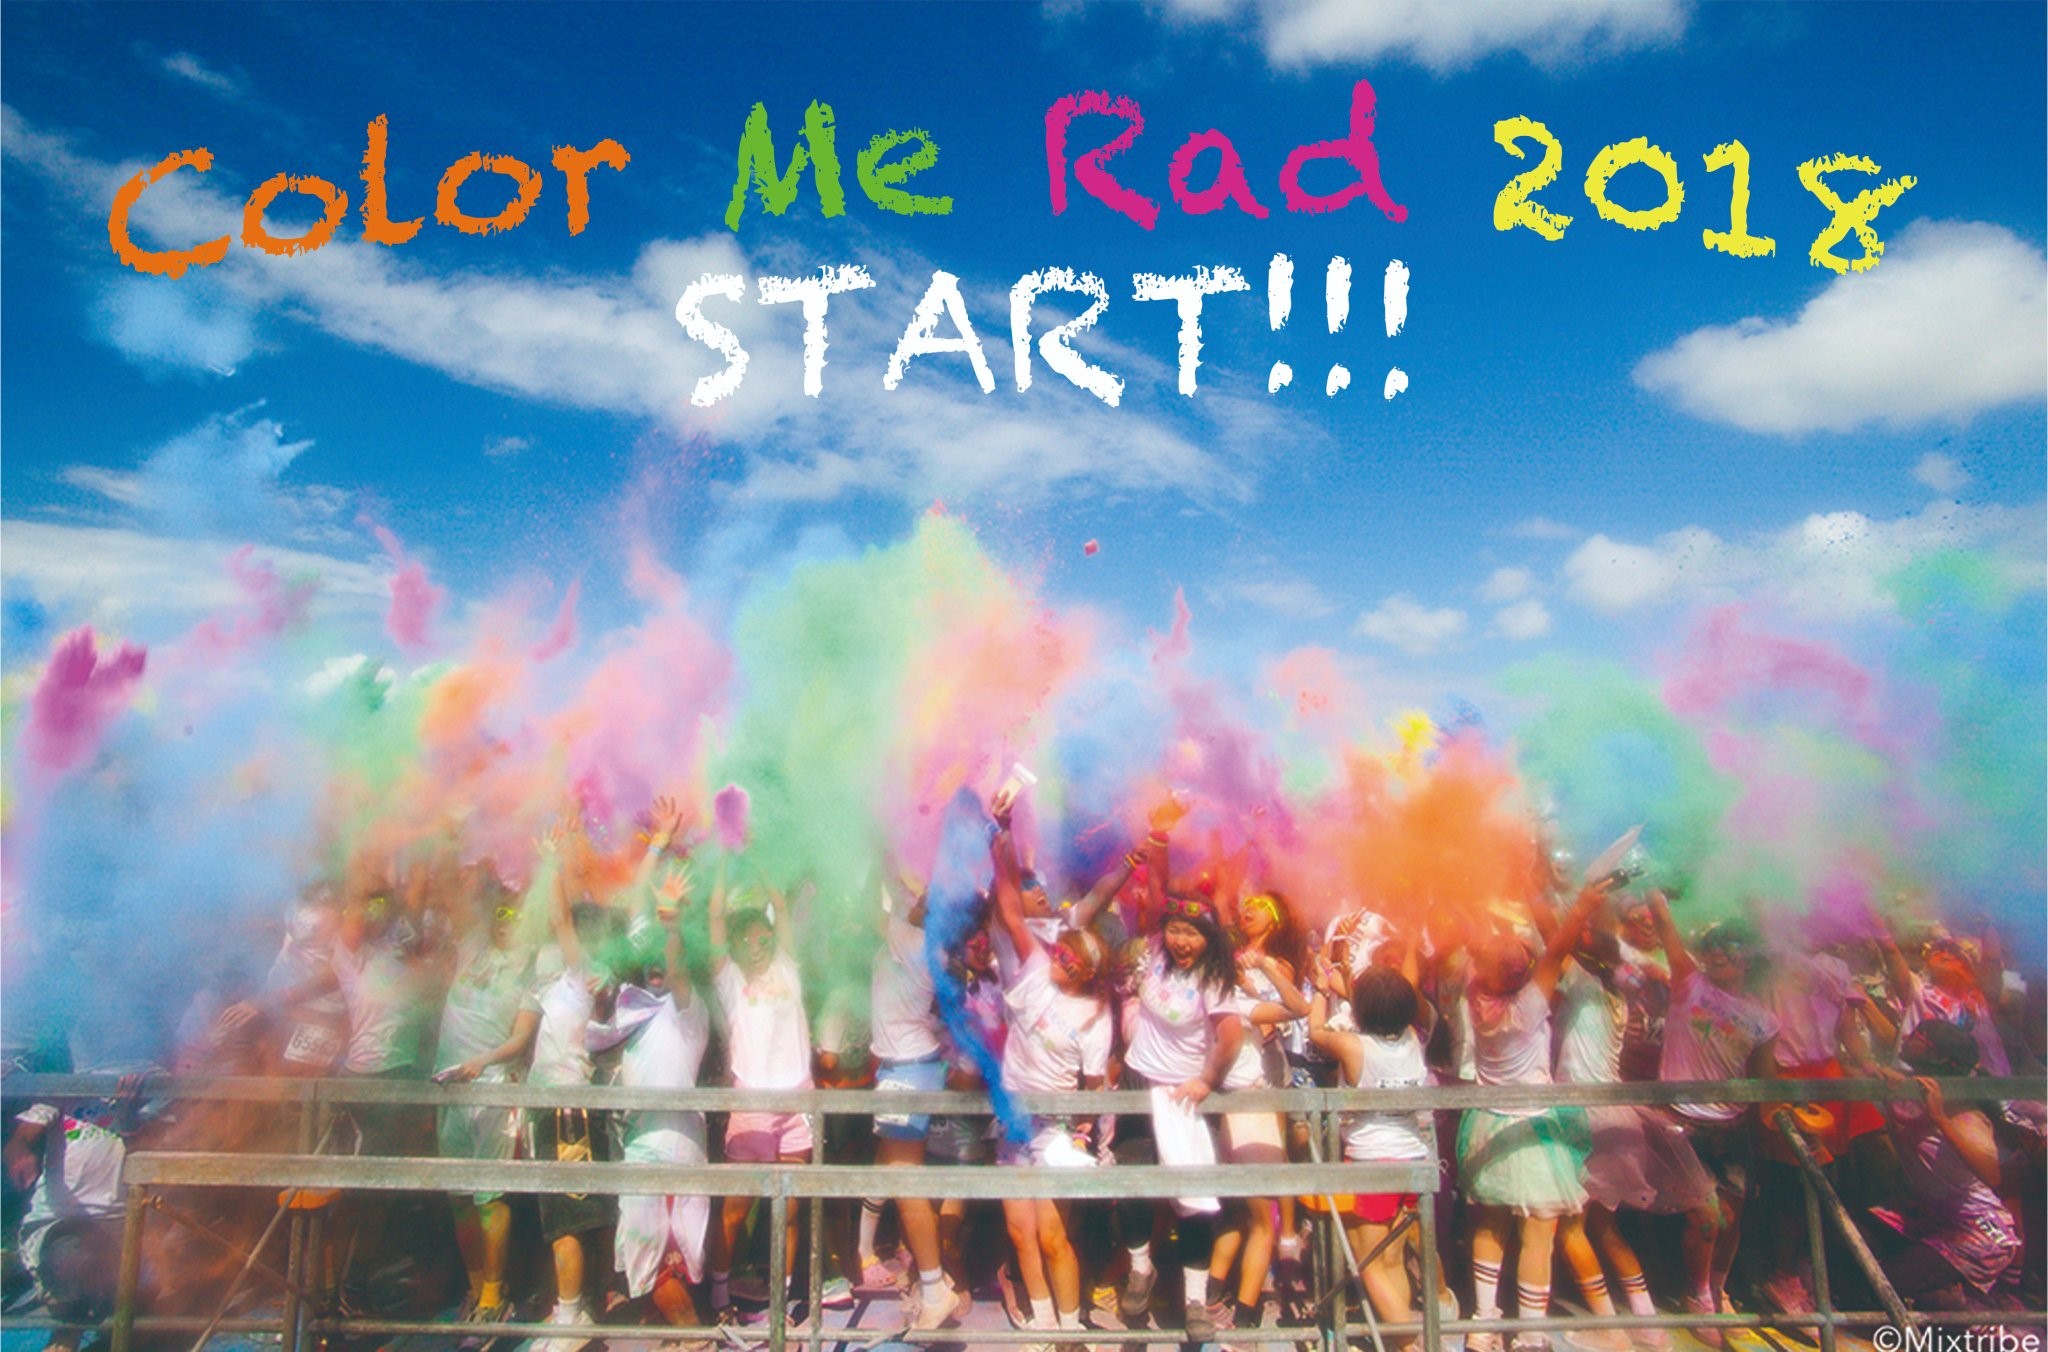 延べ17万人が参加したカラーパウダーを浴びて走る Color Me Rad と ジレットヴィーナス のコラボレーションが実現 今年の夏はすべすべ肌でフォトジェニックな夏体験を 株式会社ローソンエンタテインメントのプレスリリース